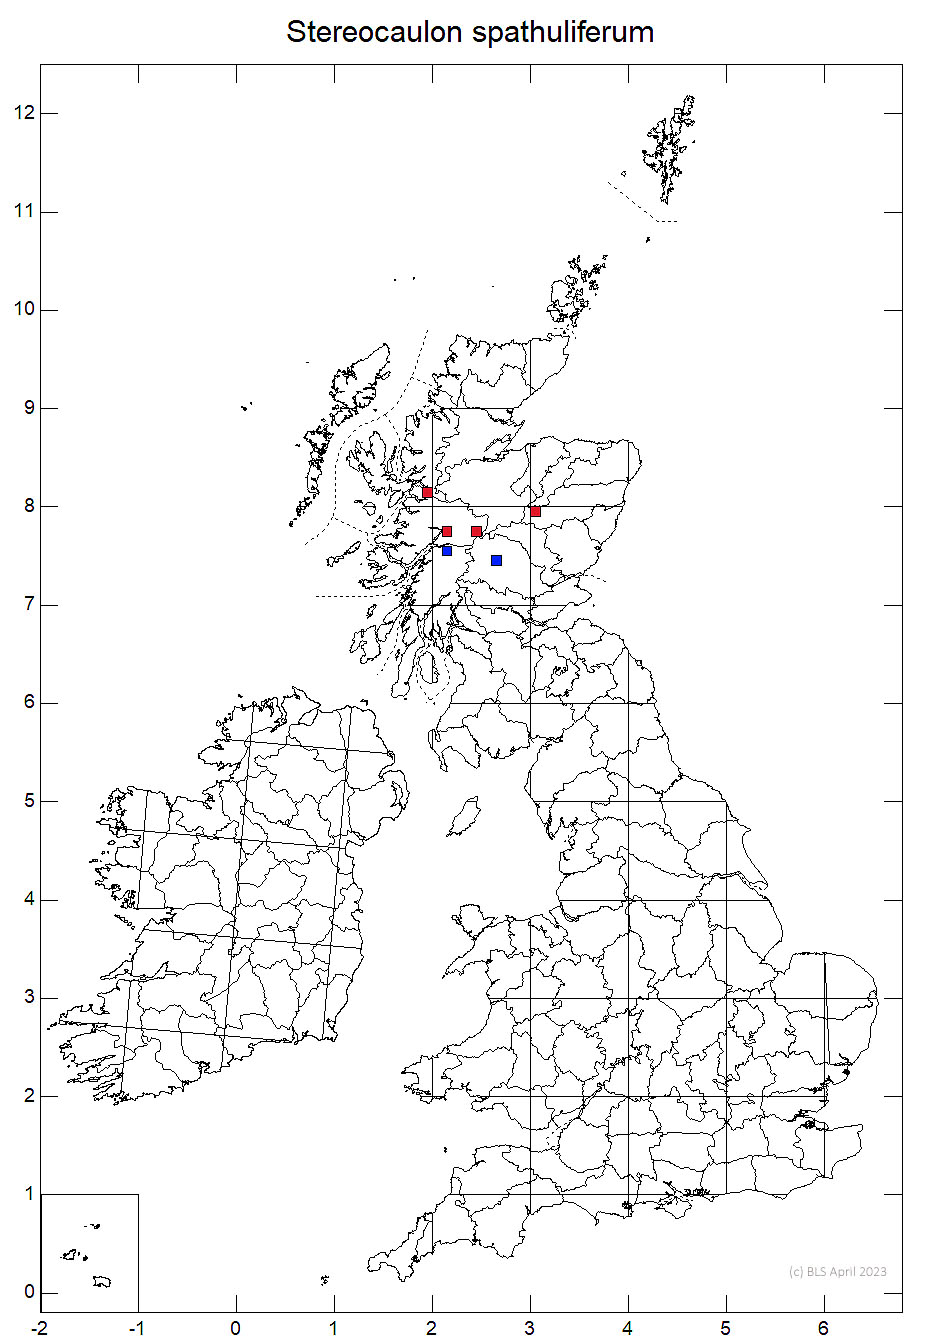 Stereocaulon spathuliferum 10km sq distribution map